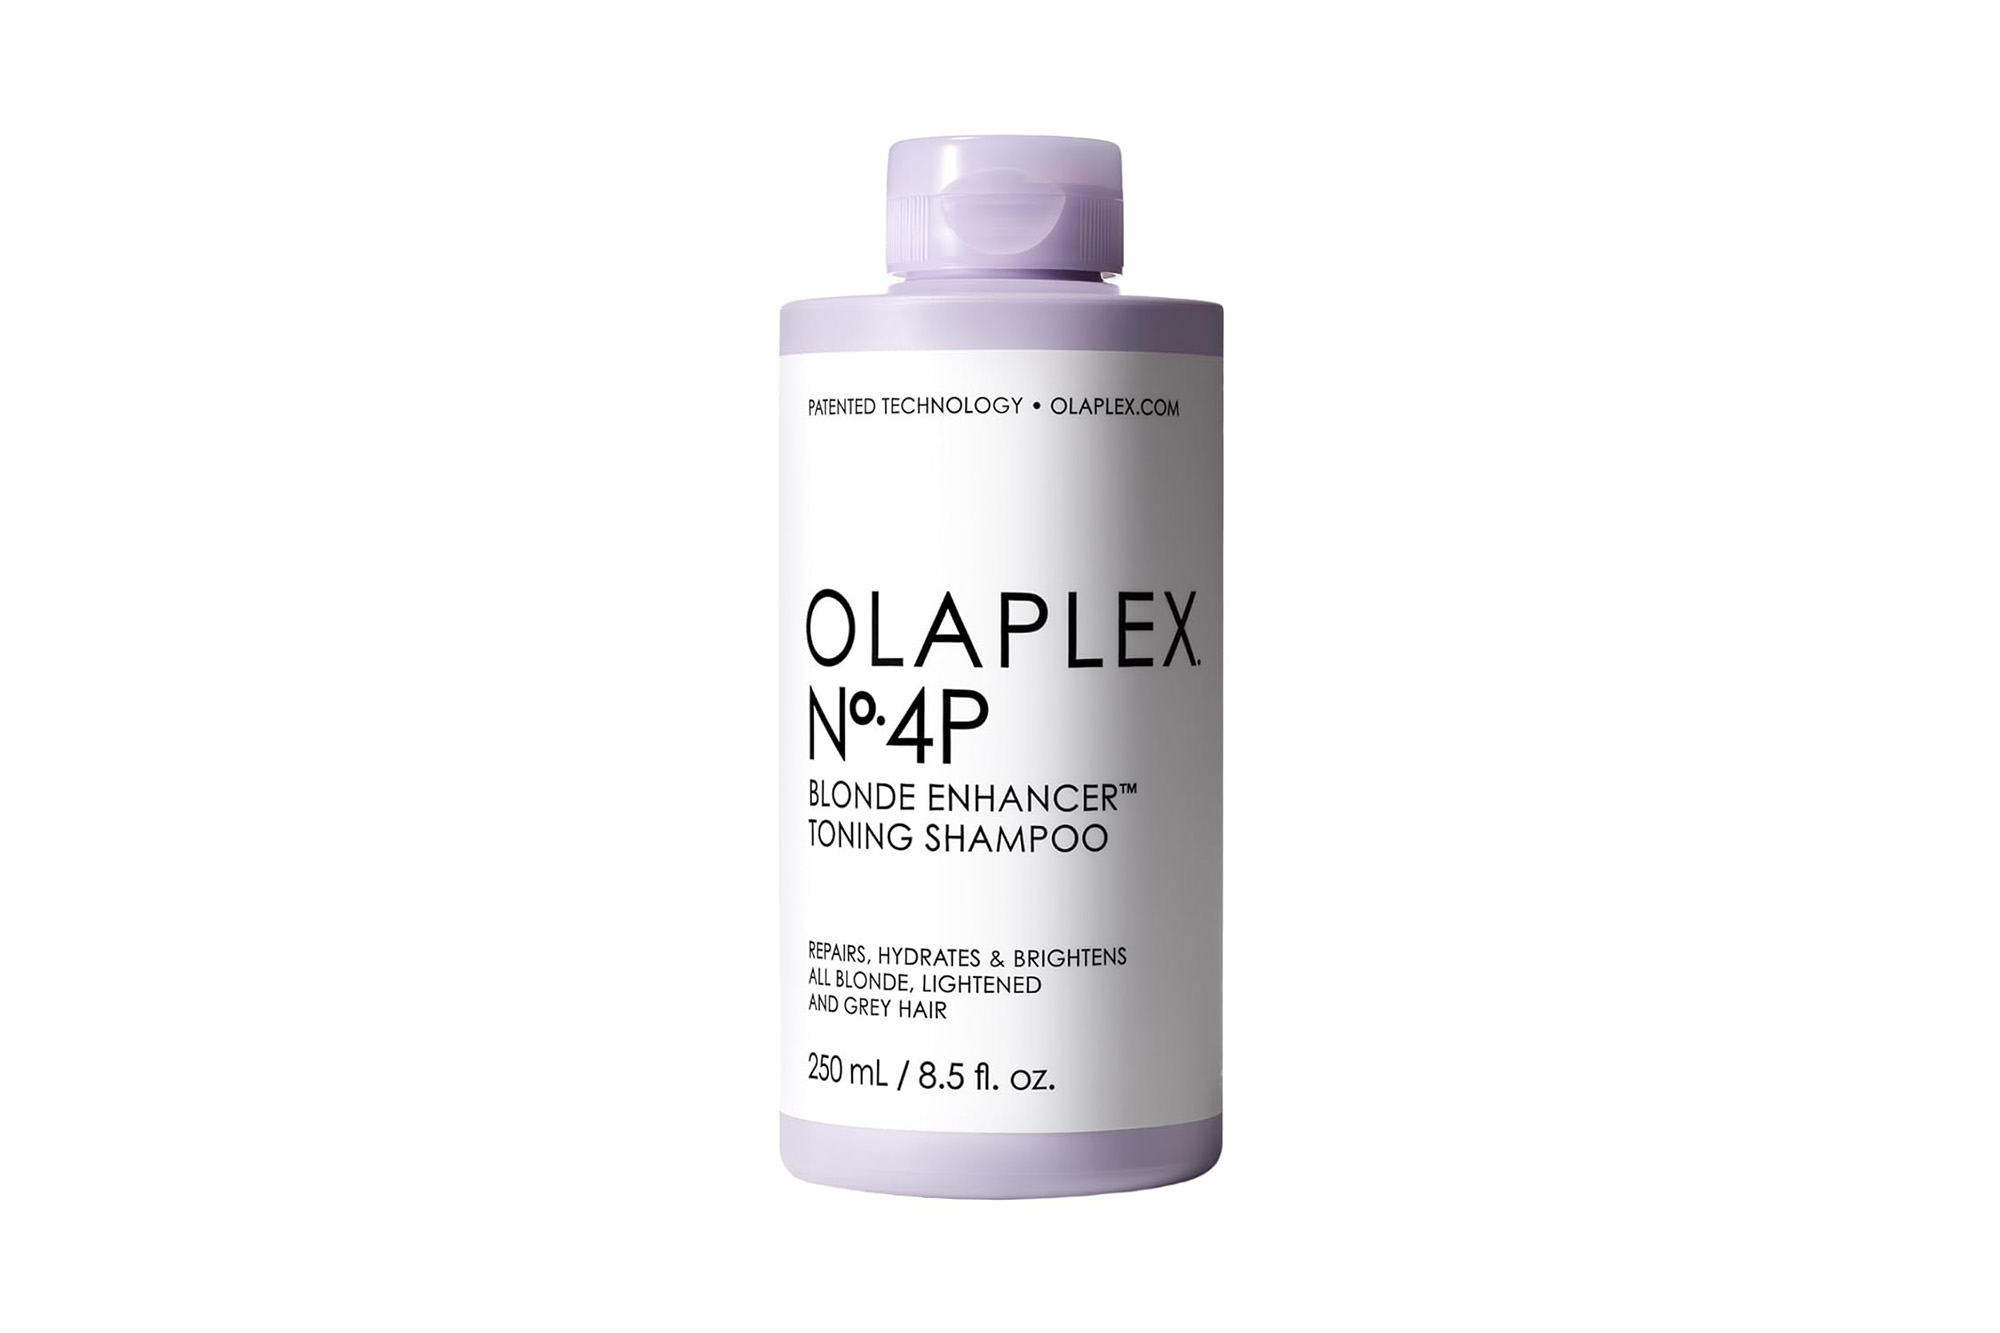 Olaplex No. 4 P shampoo